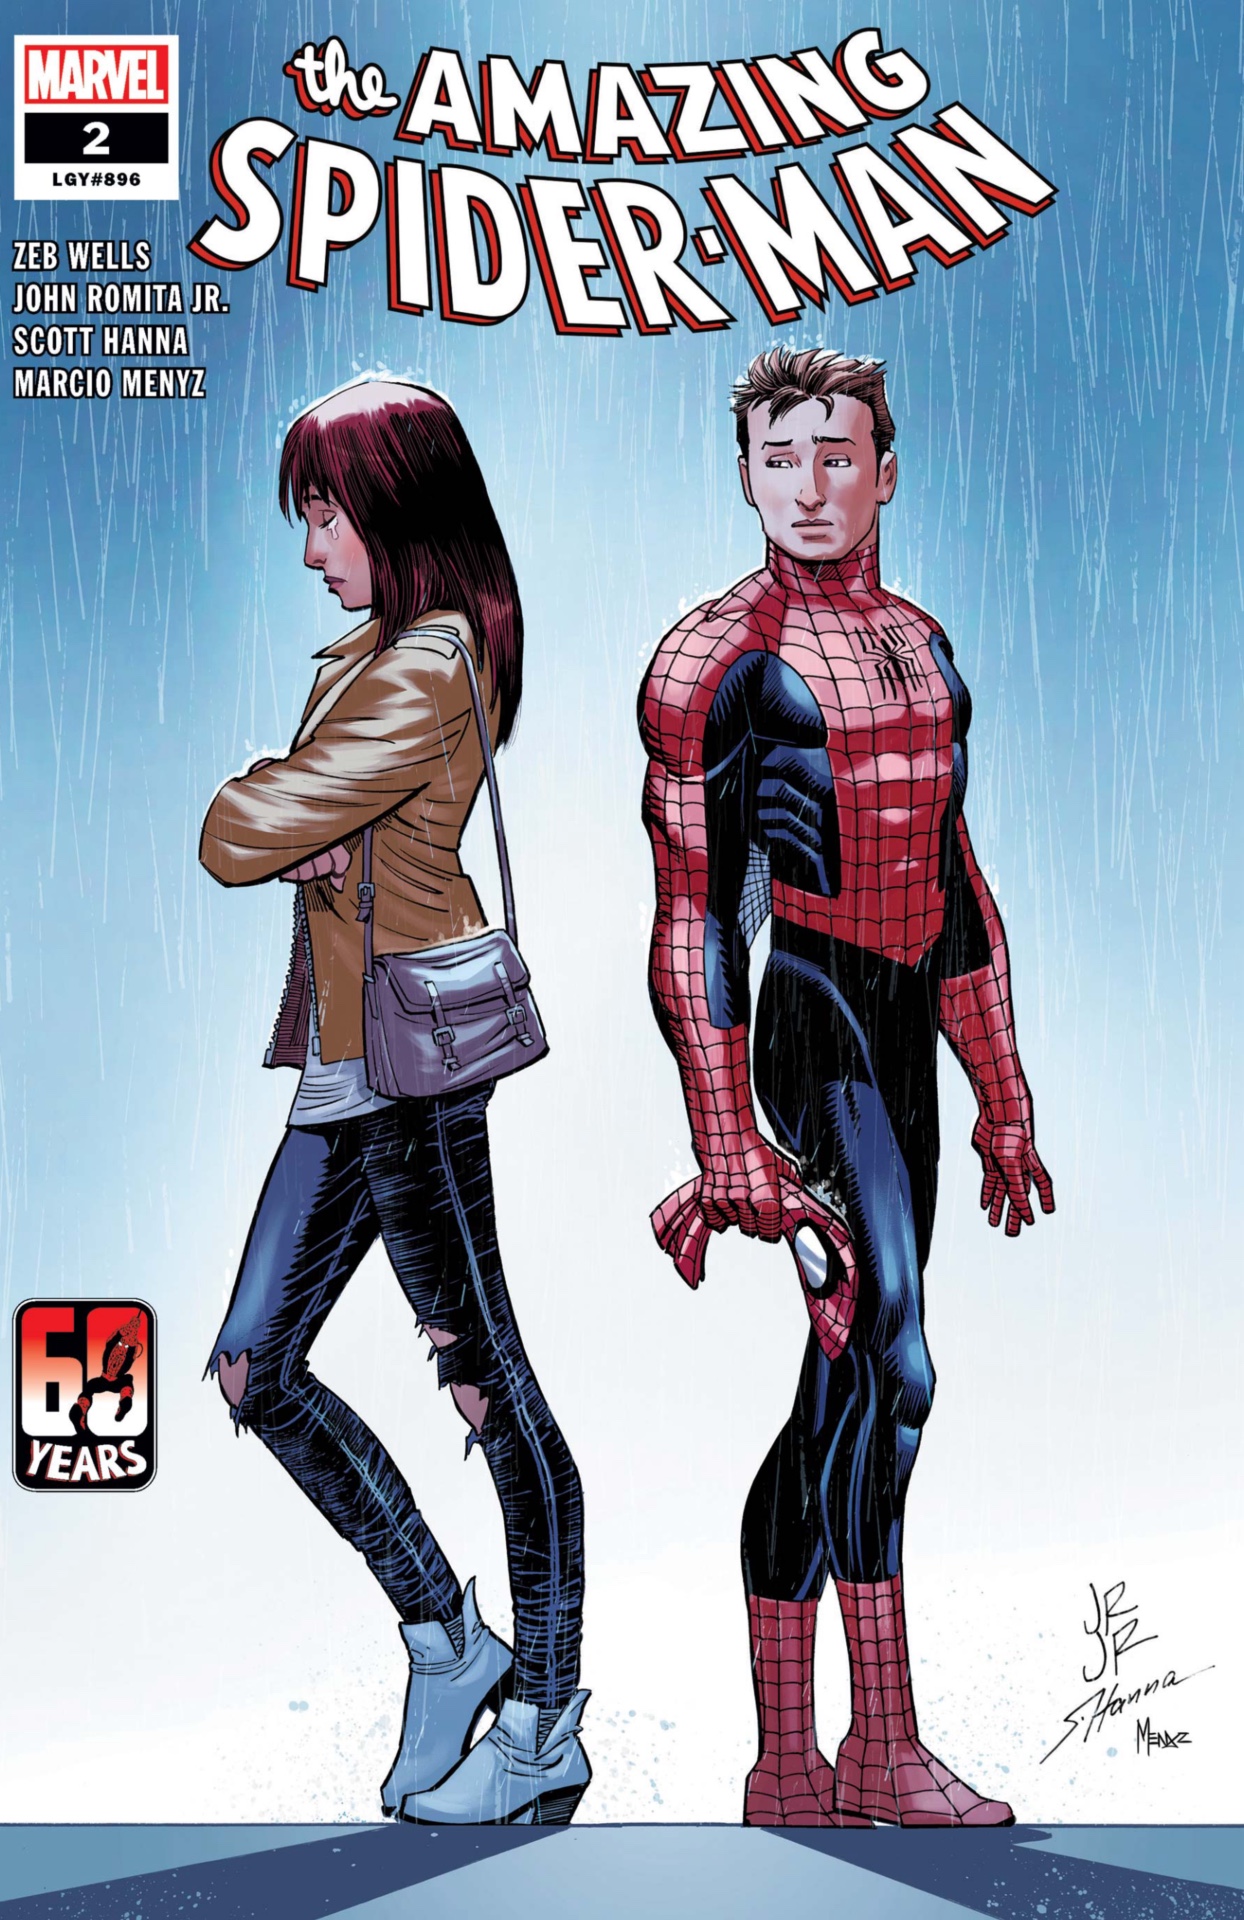 Peter Parker och Mary Jane Watson i Marvel Comics